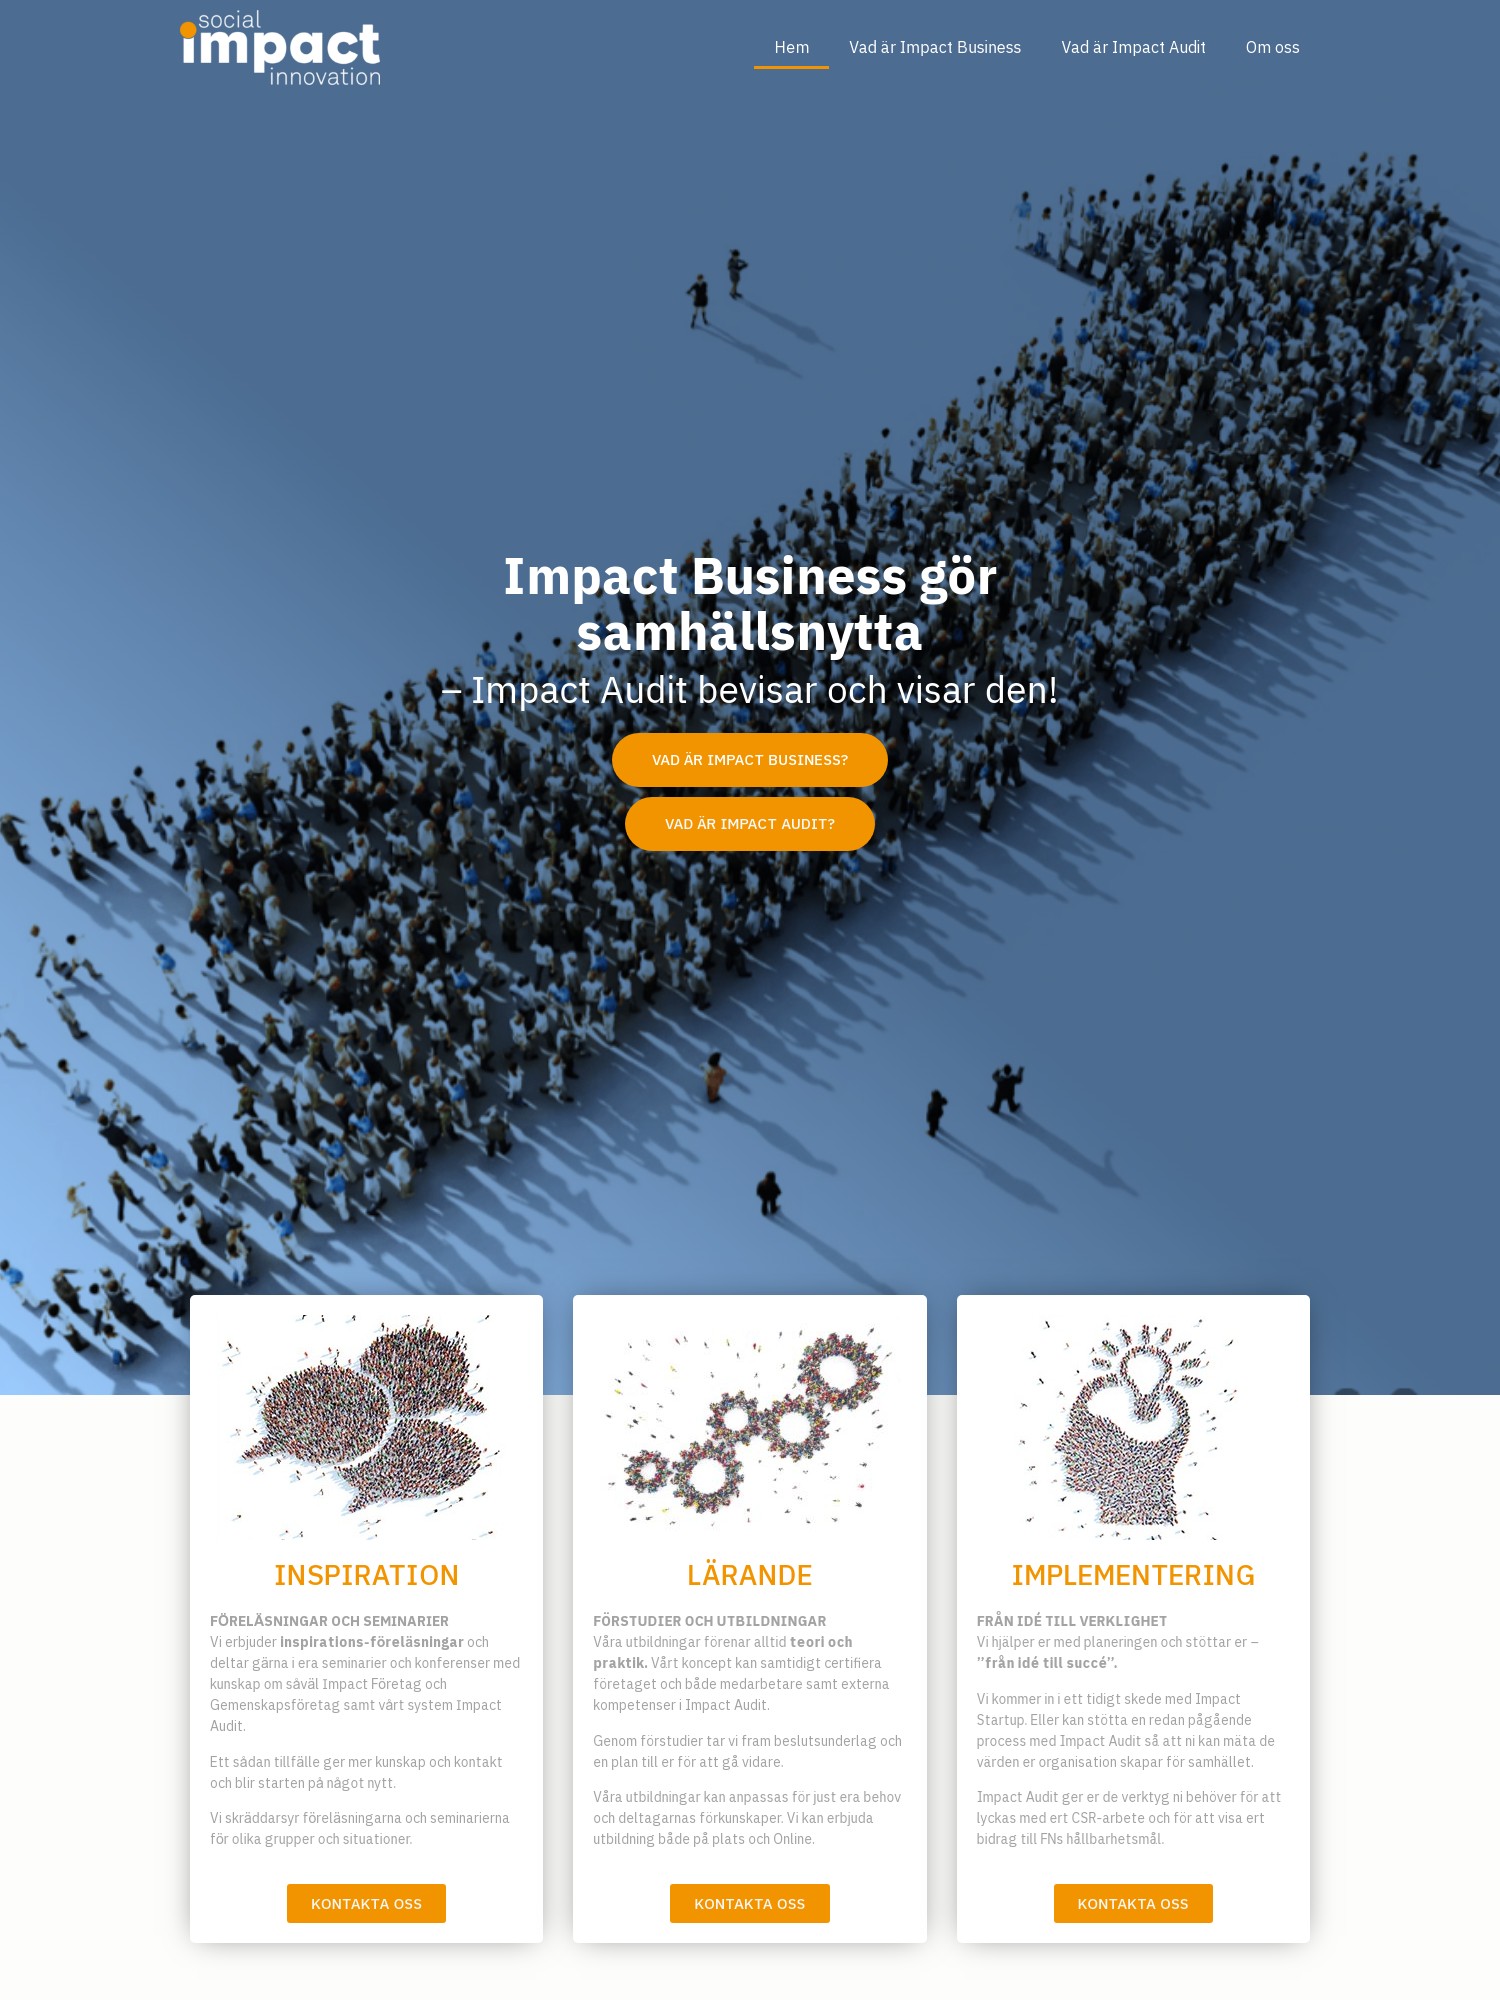 Socialimpact – Impact Business gör samhällsnytta